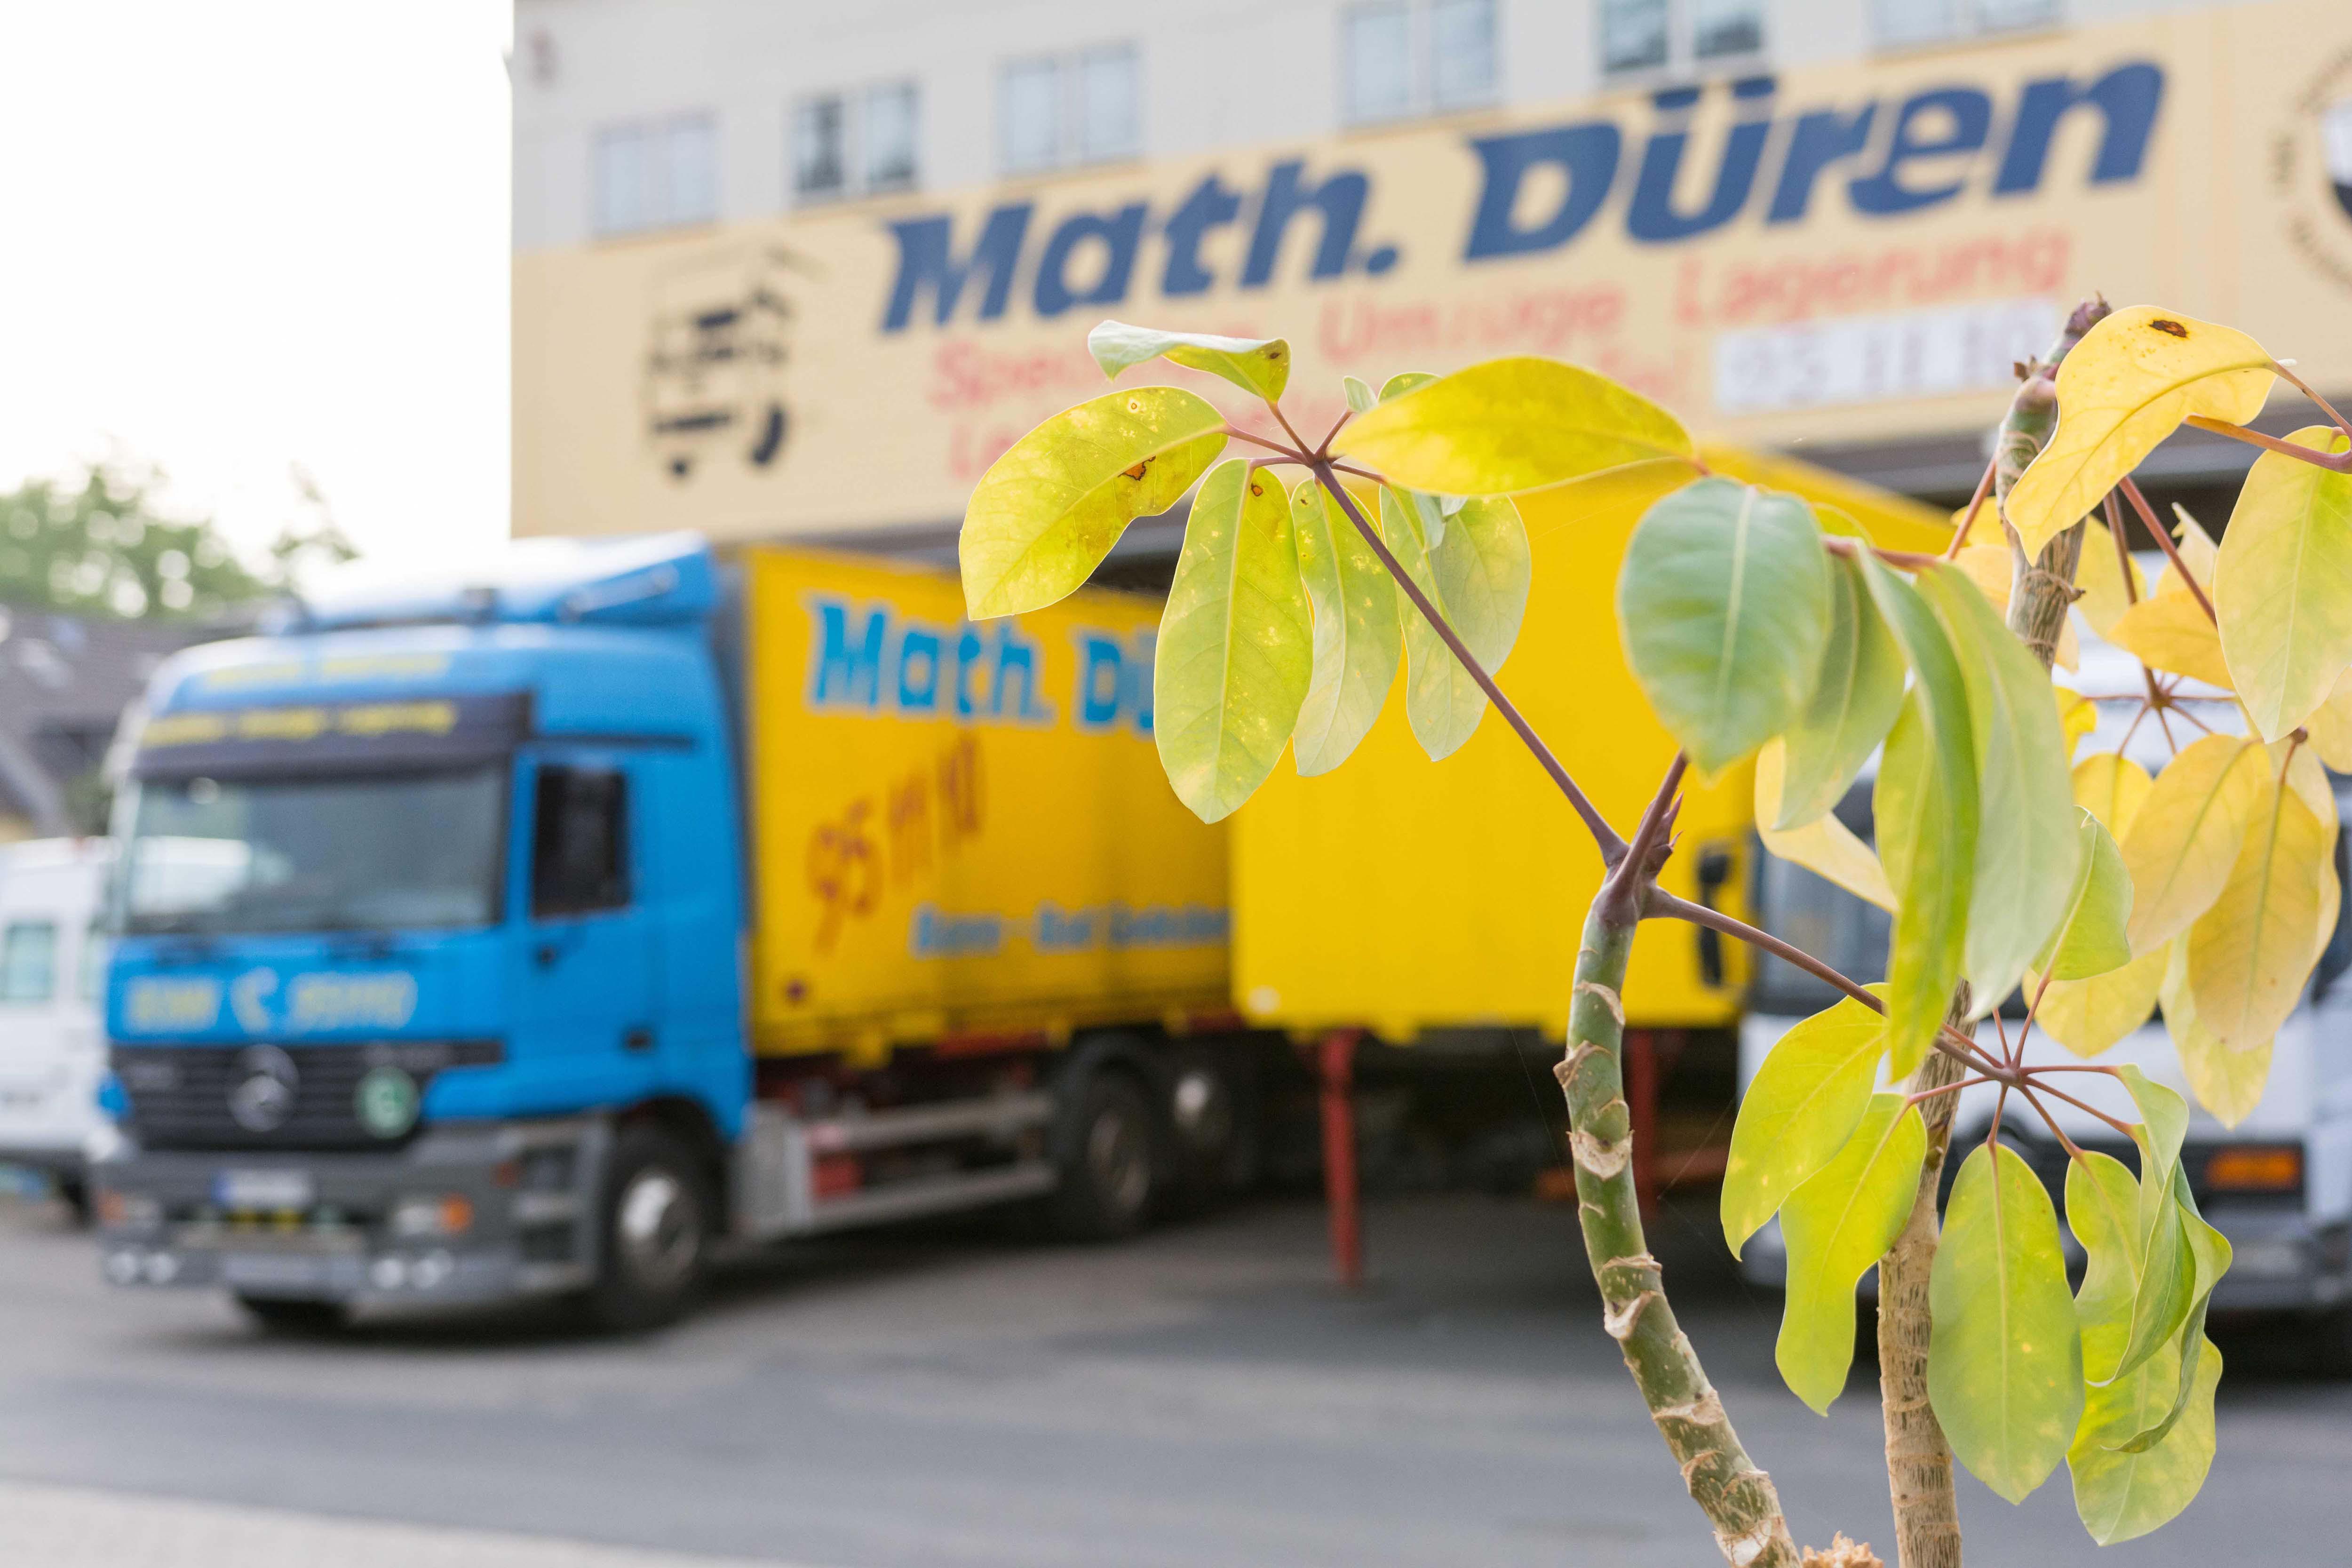 Math. Düren Transport GmbH & Co. KG Bonn